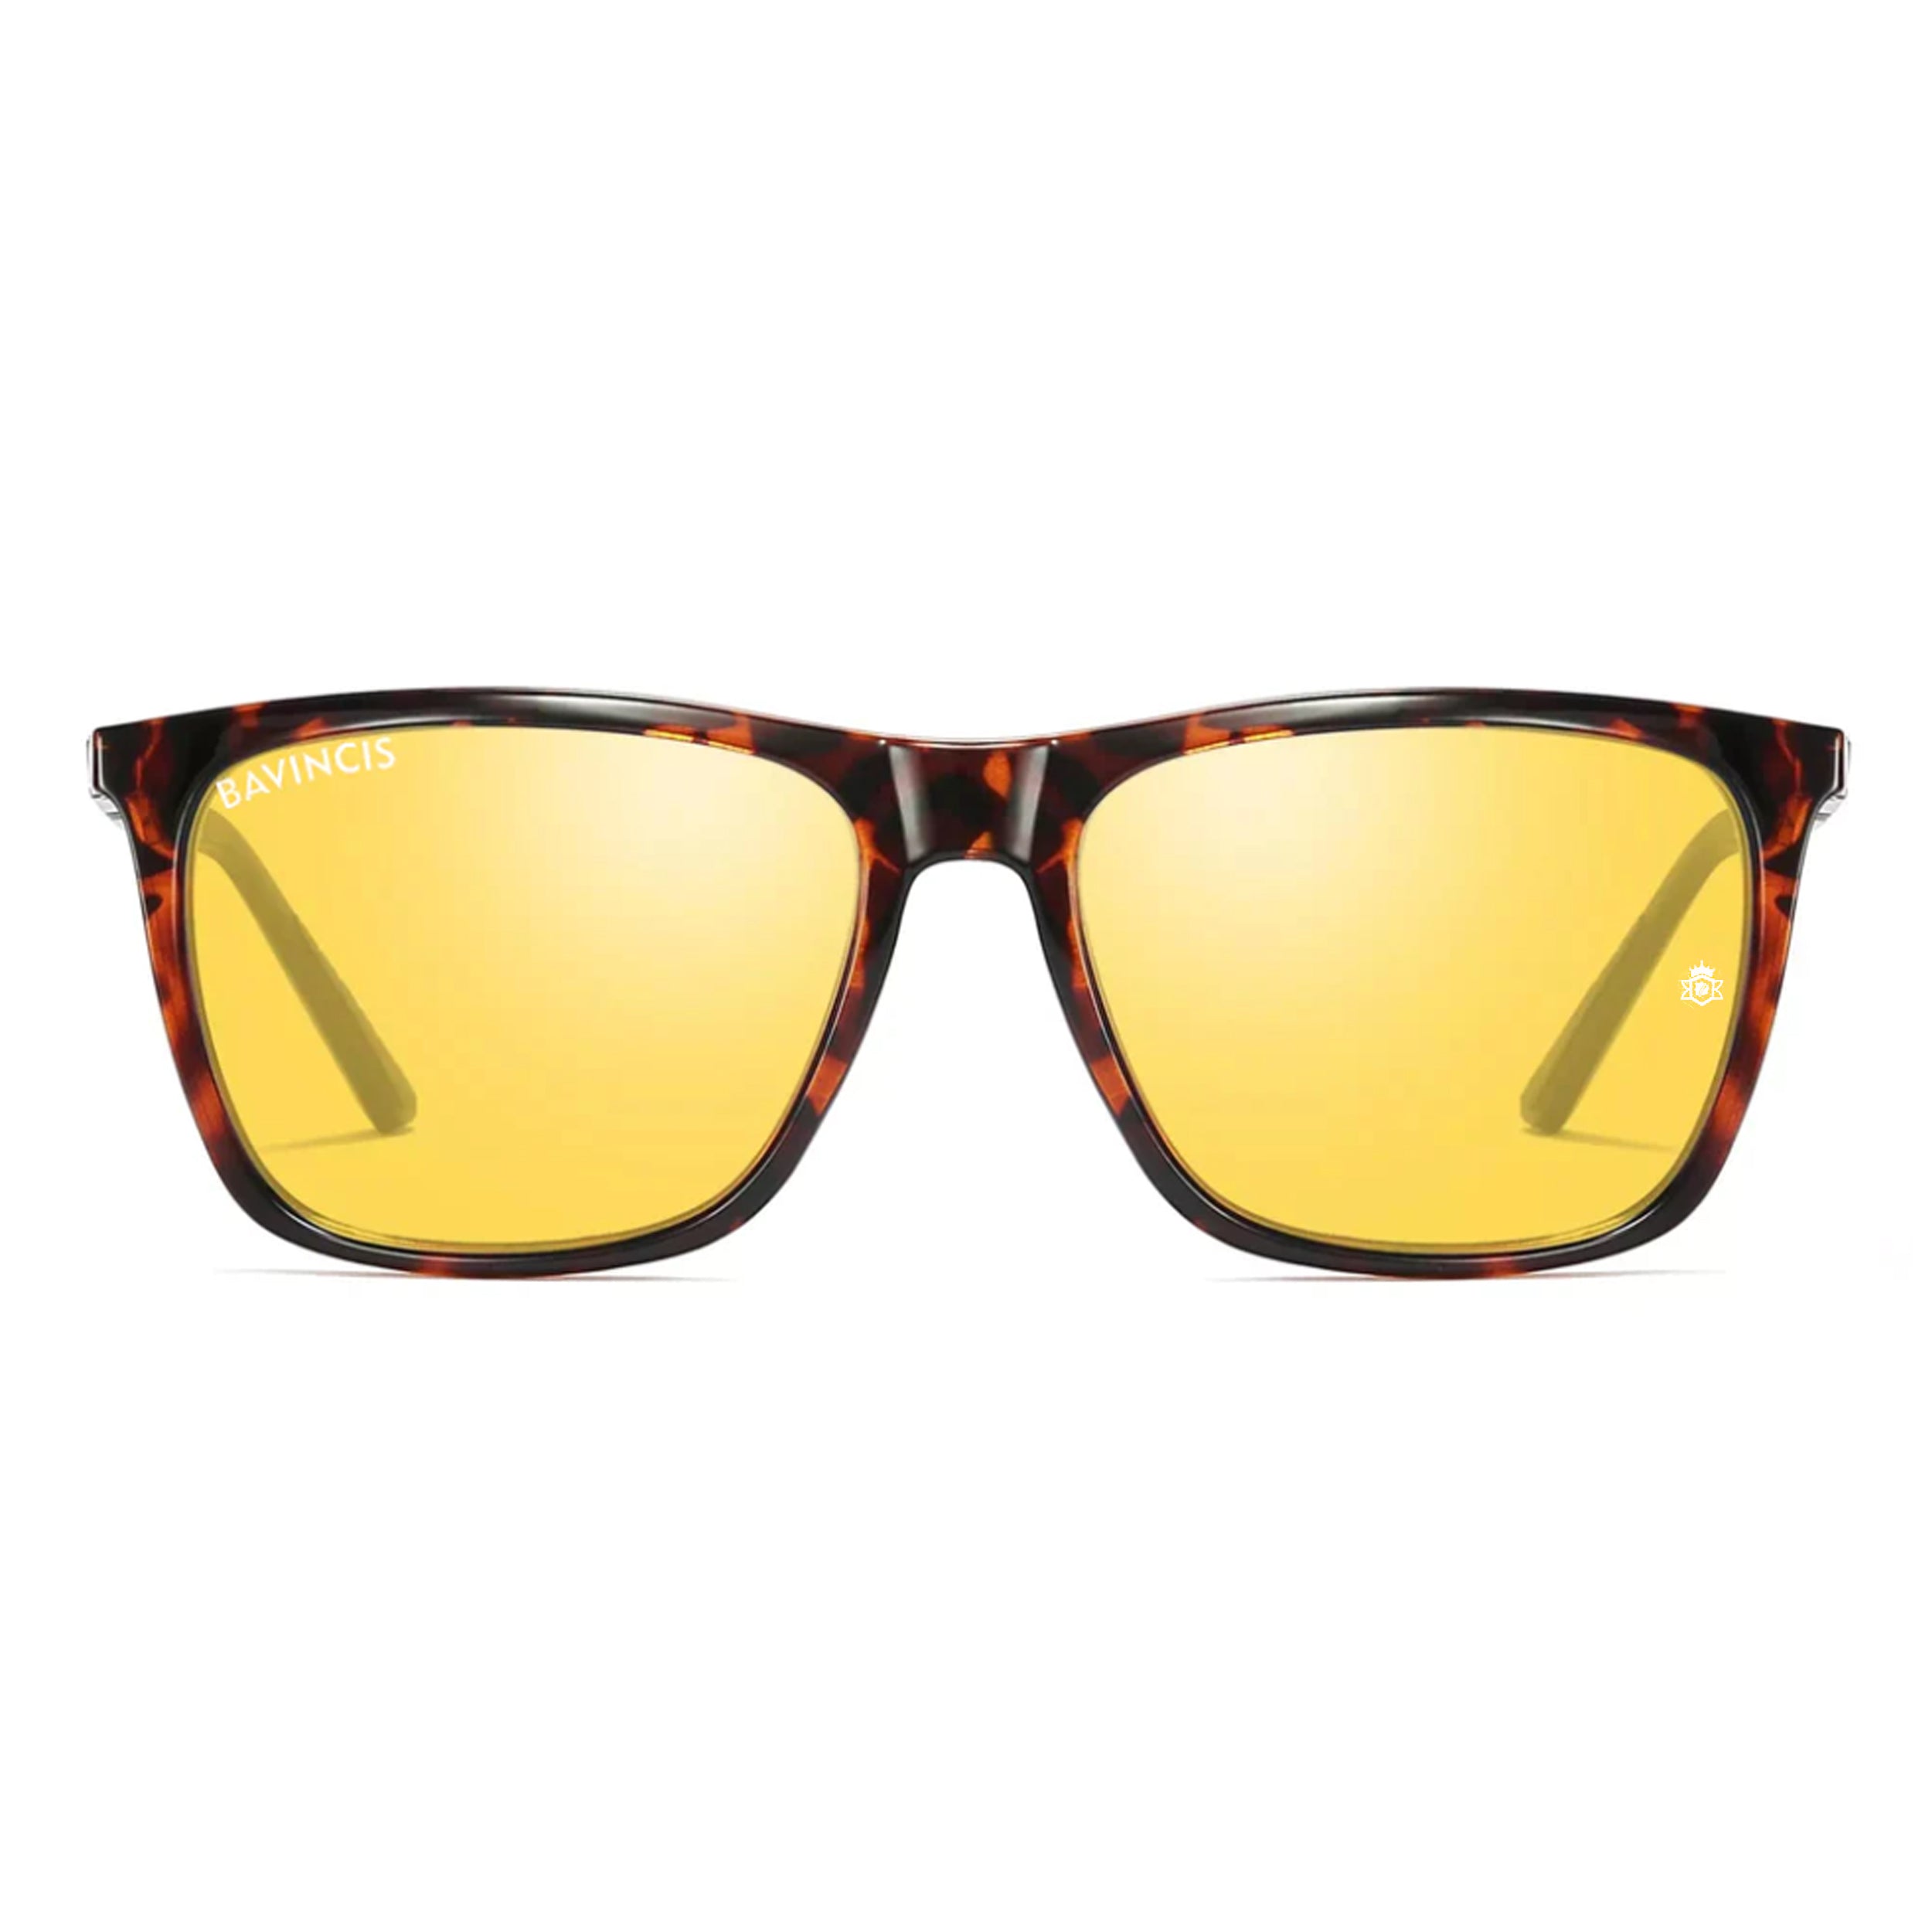 Bavincis Flair Brown And Yellow Edition Sunglasses